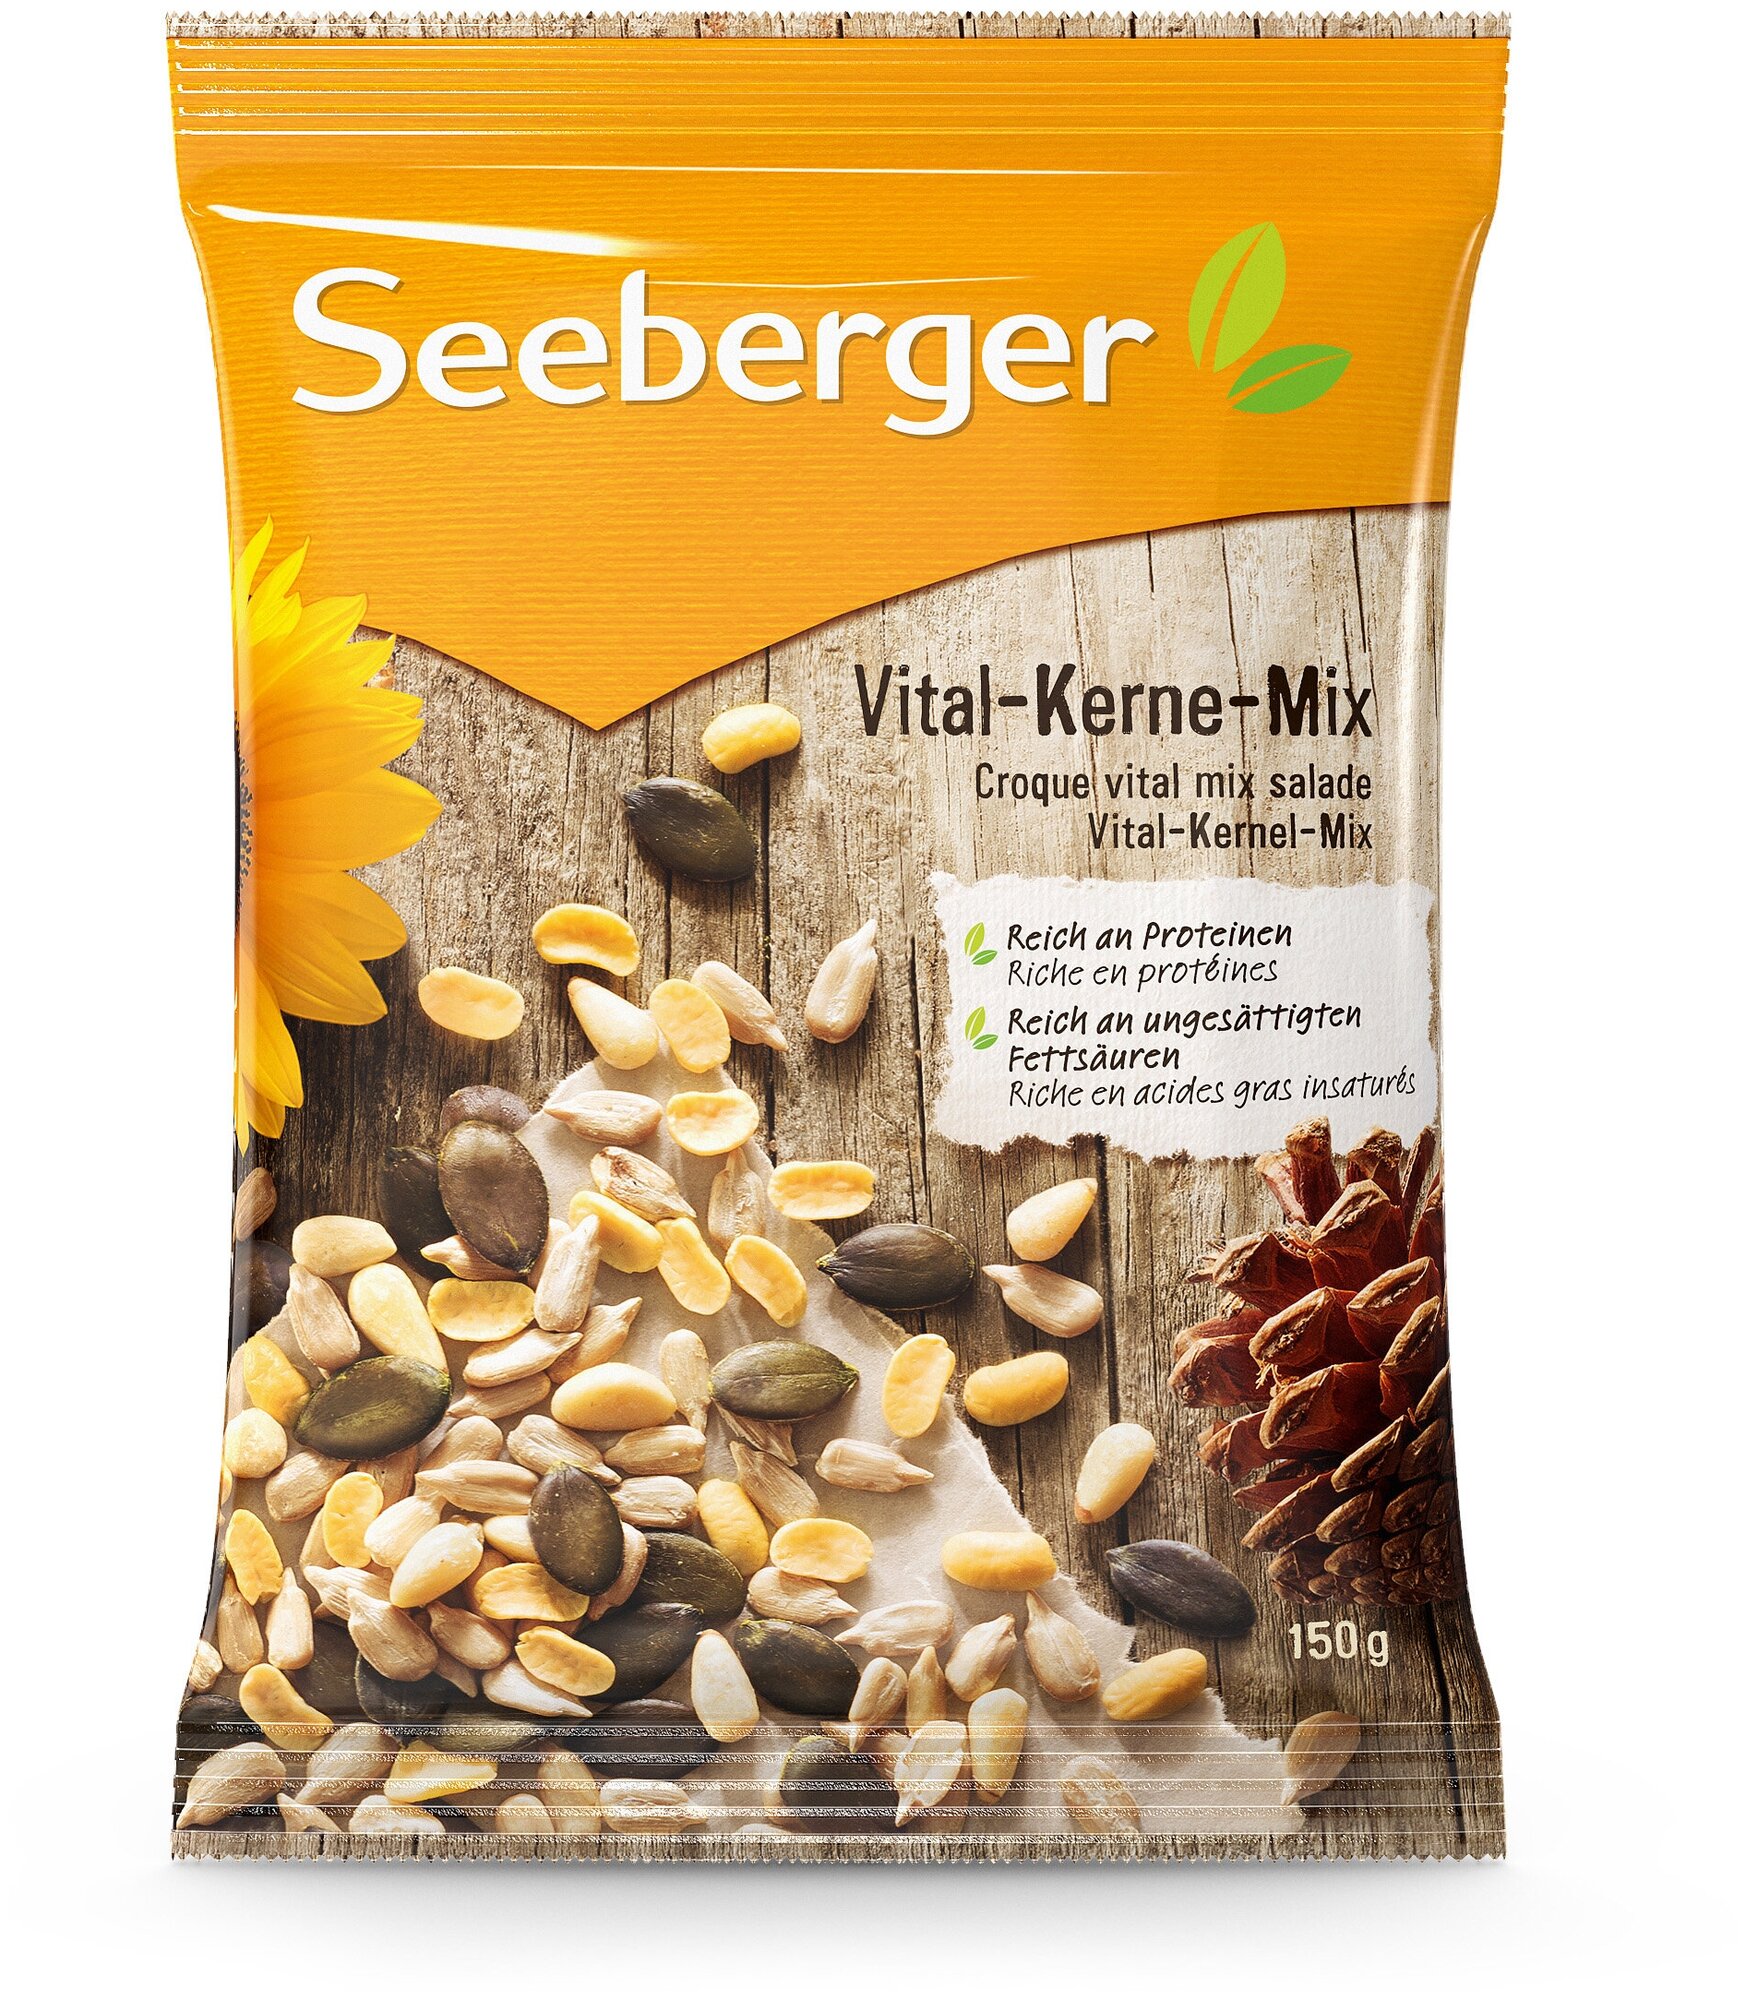 Смесь очищенных семян Seeberger подсолнечника, очищенных семян тыквы, обжаренных соевых бобов и кедровых орехов Vital-Kernel-Mix, 150г